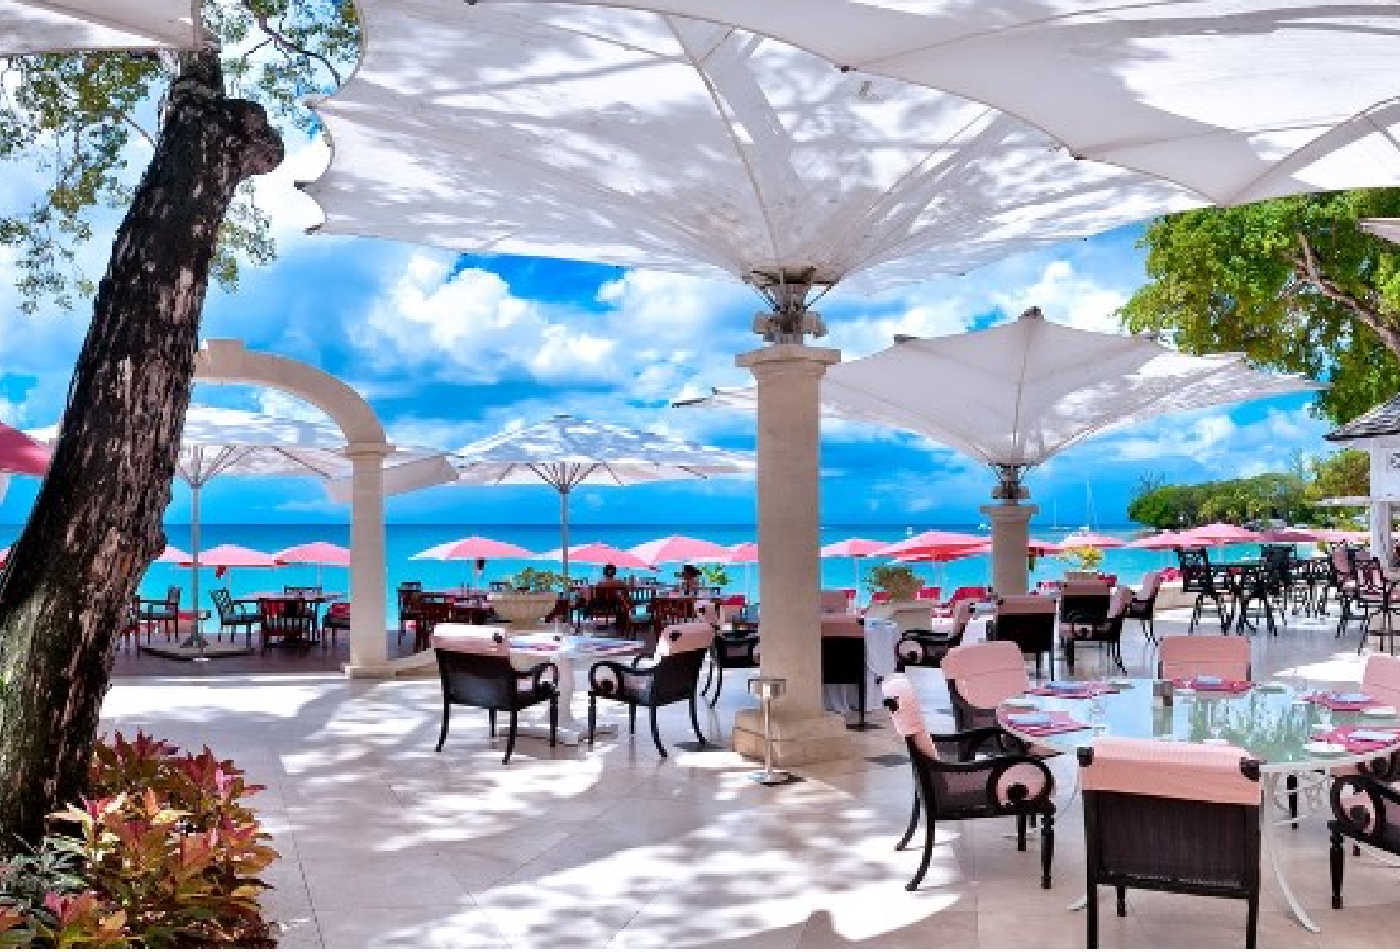 Sandy Lane, Sandy Lane Barbados, Sandy Lane Caribbean, Caribbean resorts, Barbados resorts